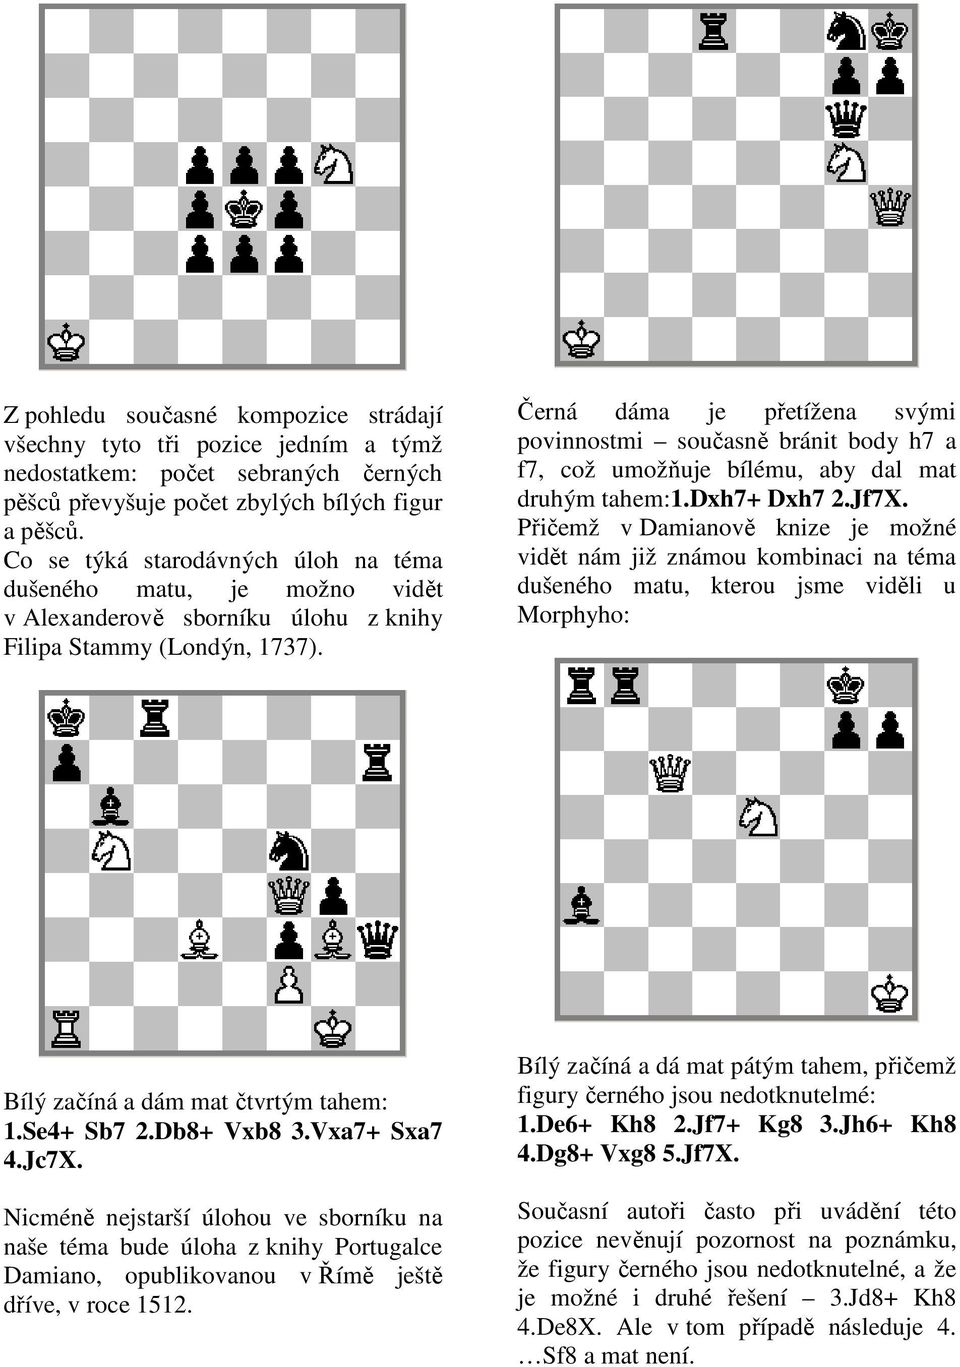 Černá dáma je přetížena svými povinnostmi současně bránit body h7 a f7, což umožňuje bílému, aby dal mat druhým tahem:1.dxh7+ Dxh7 2.Jf7X.